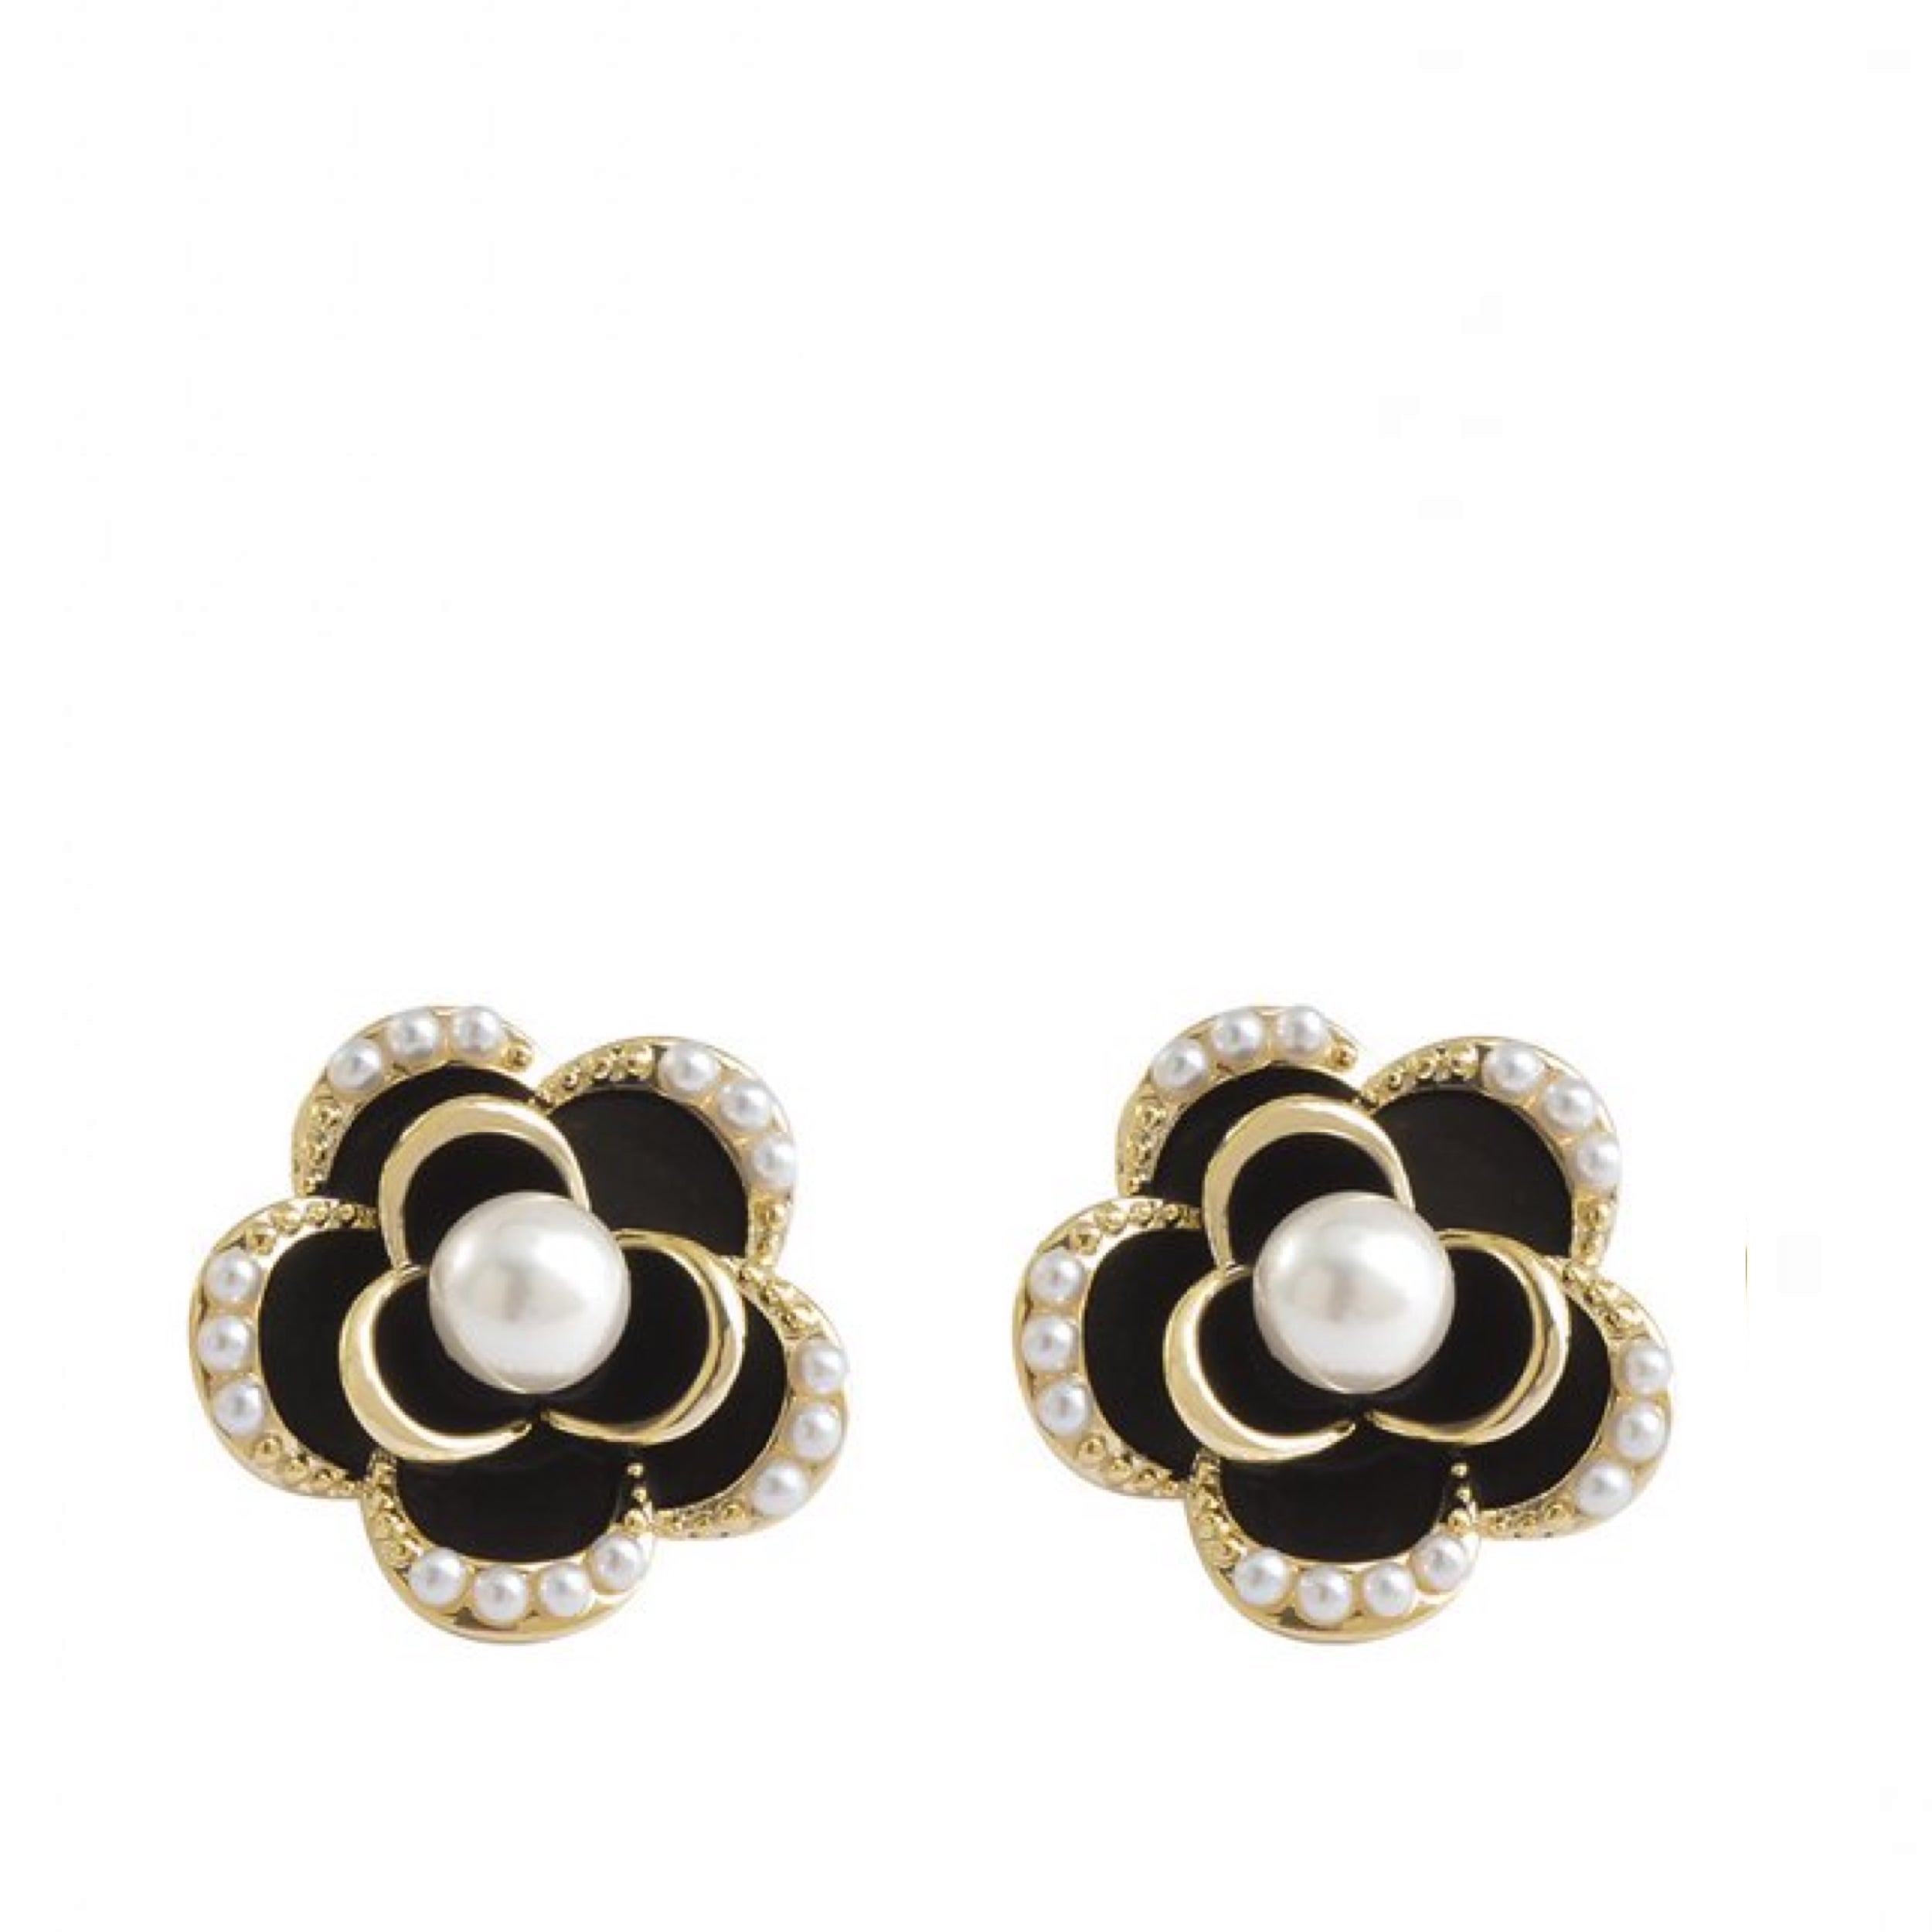 18K Gold White Pearl & Black Enamel Rose Post Earrings